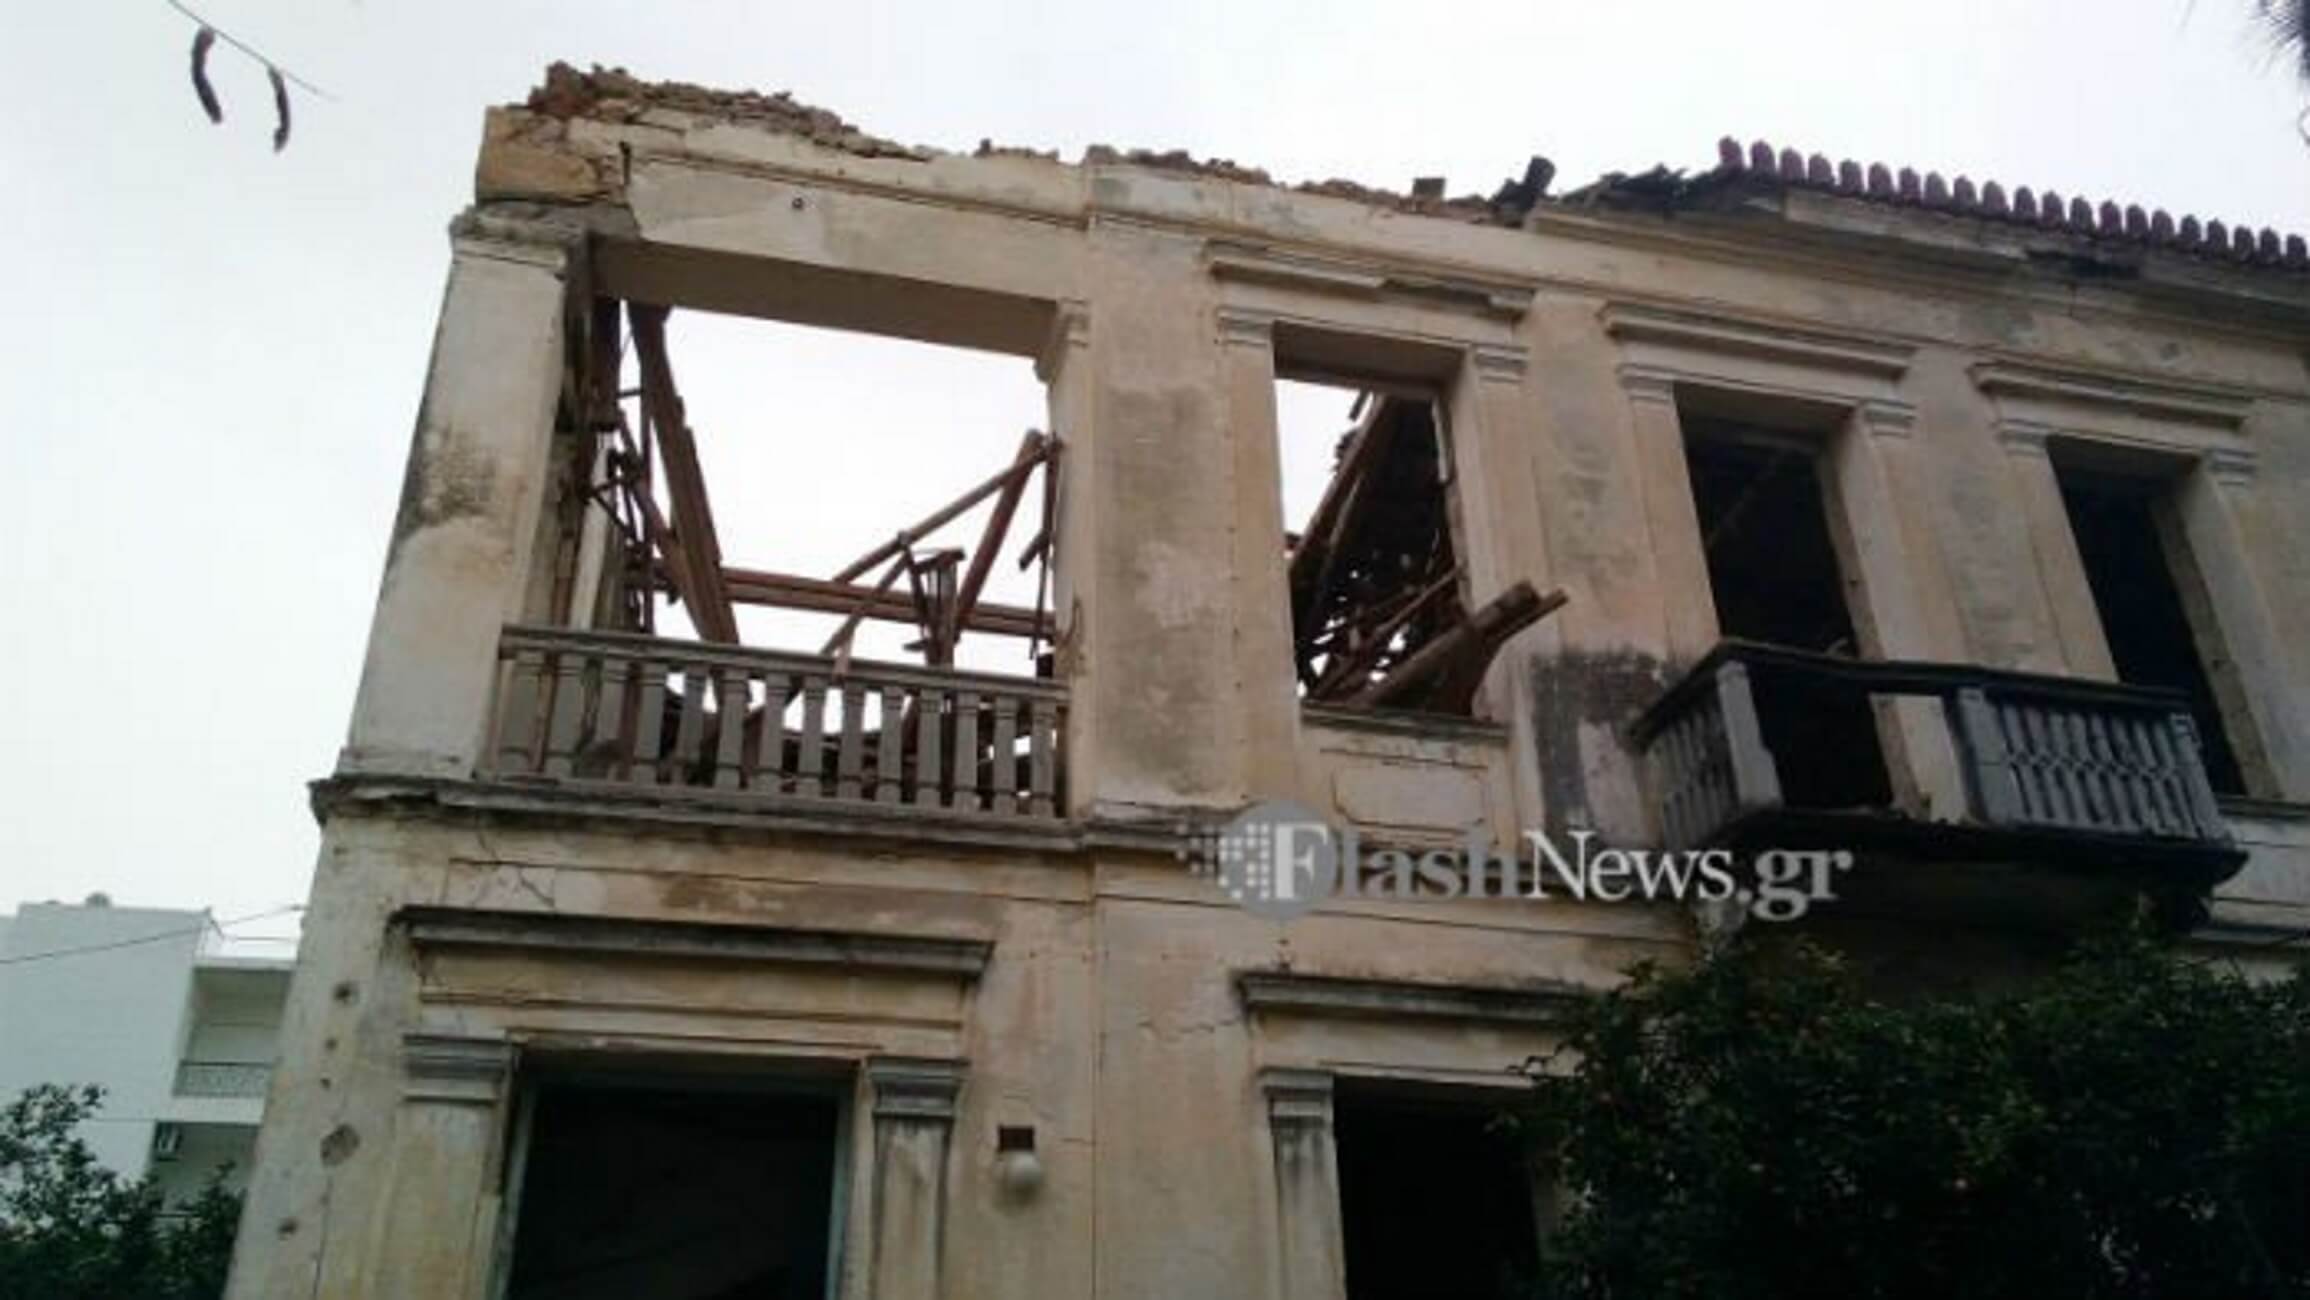 Χανιά: Κατέρρευσε η στέγη νεοκλασικού κτιρίου – Το αποτέλεσμα της αδιαφορίας μέσα από εικόνες [pics]